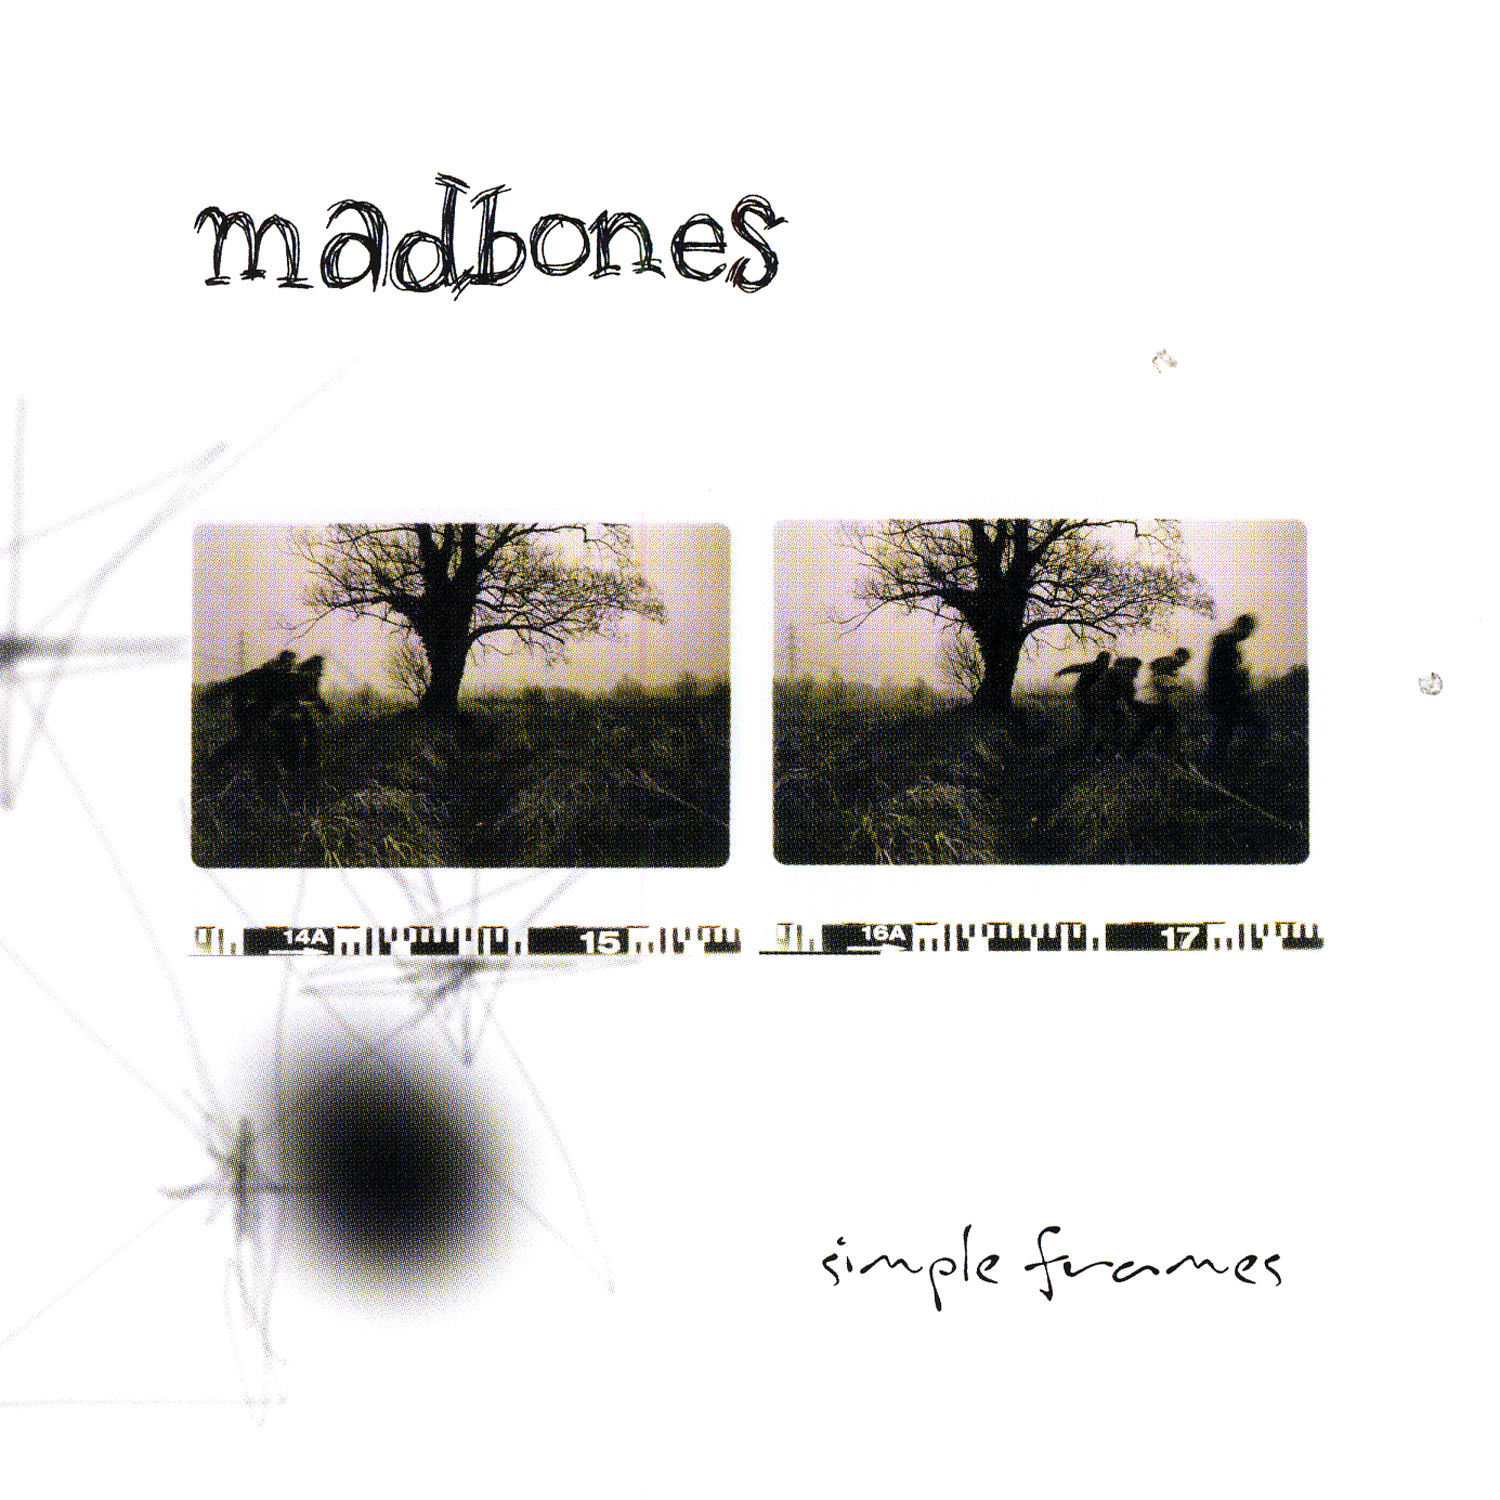 Madbones